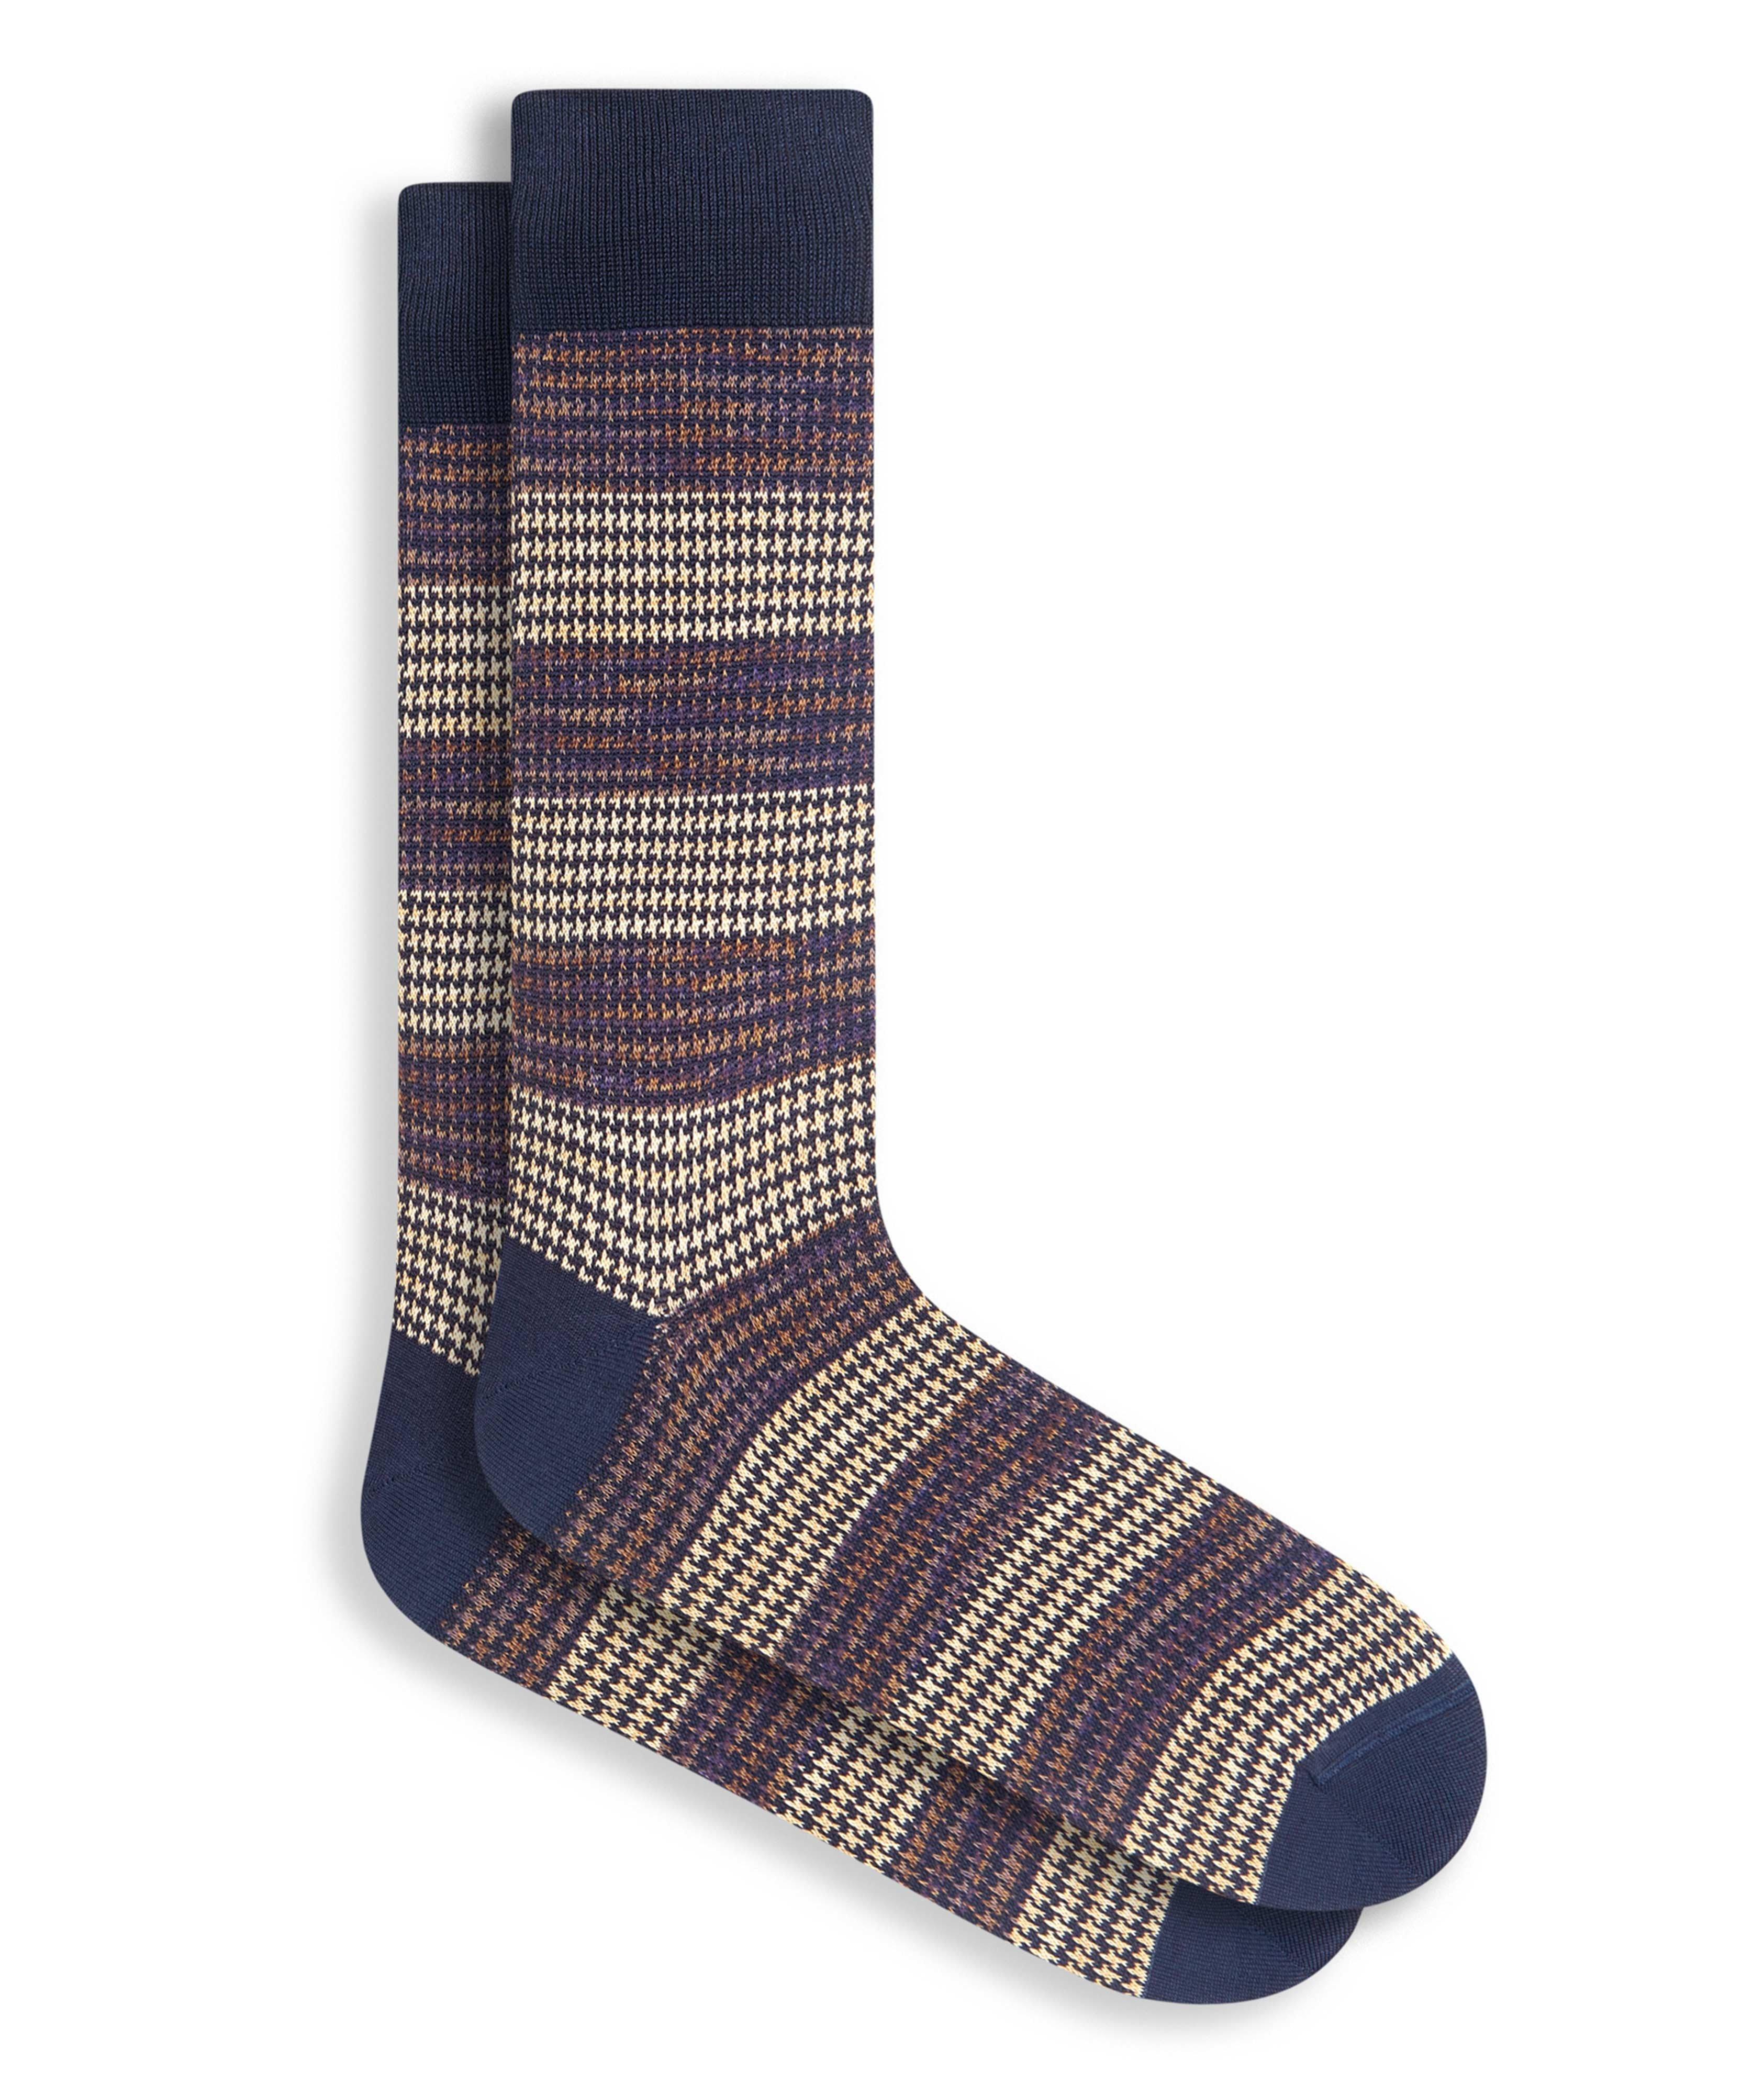 Houndstooth Stripe Cotton-Blend Socks image 0